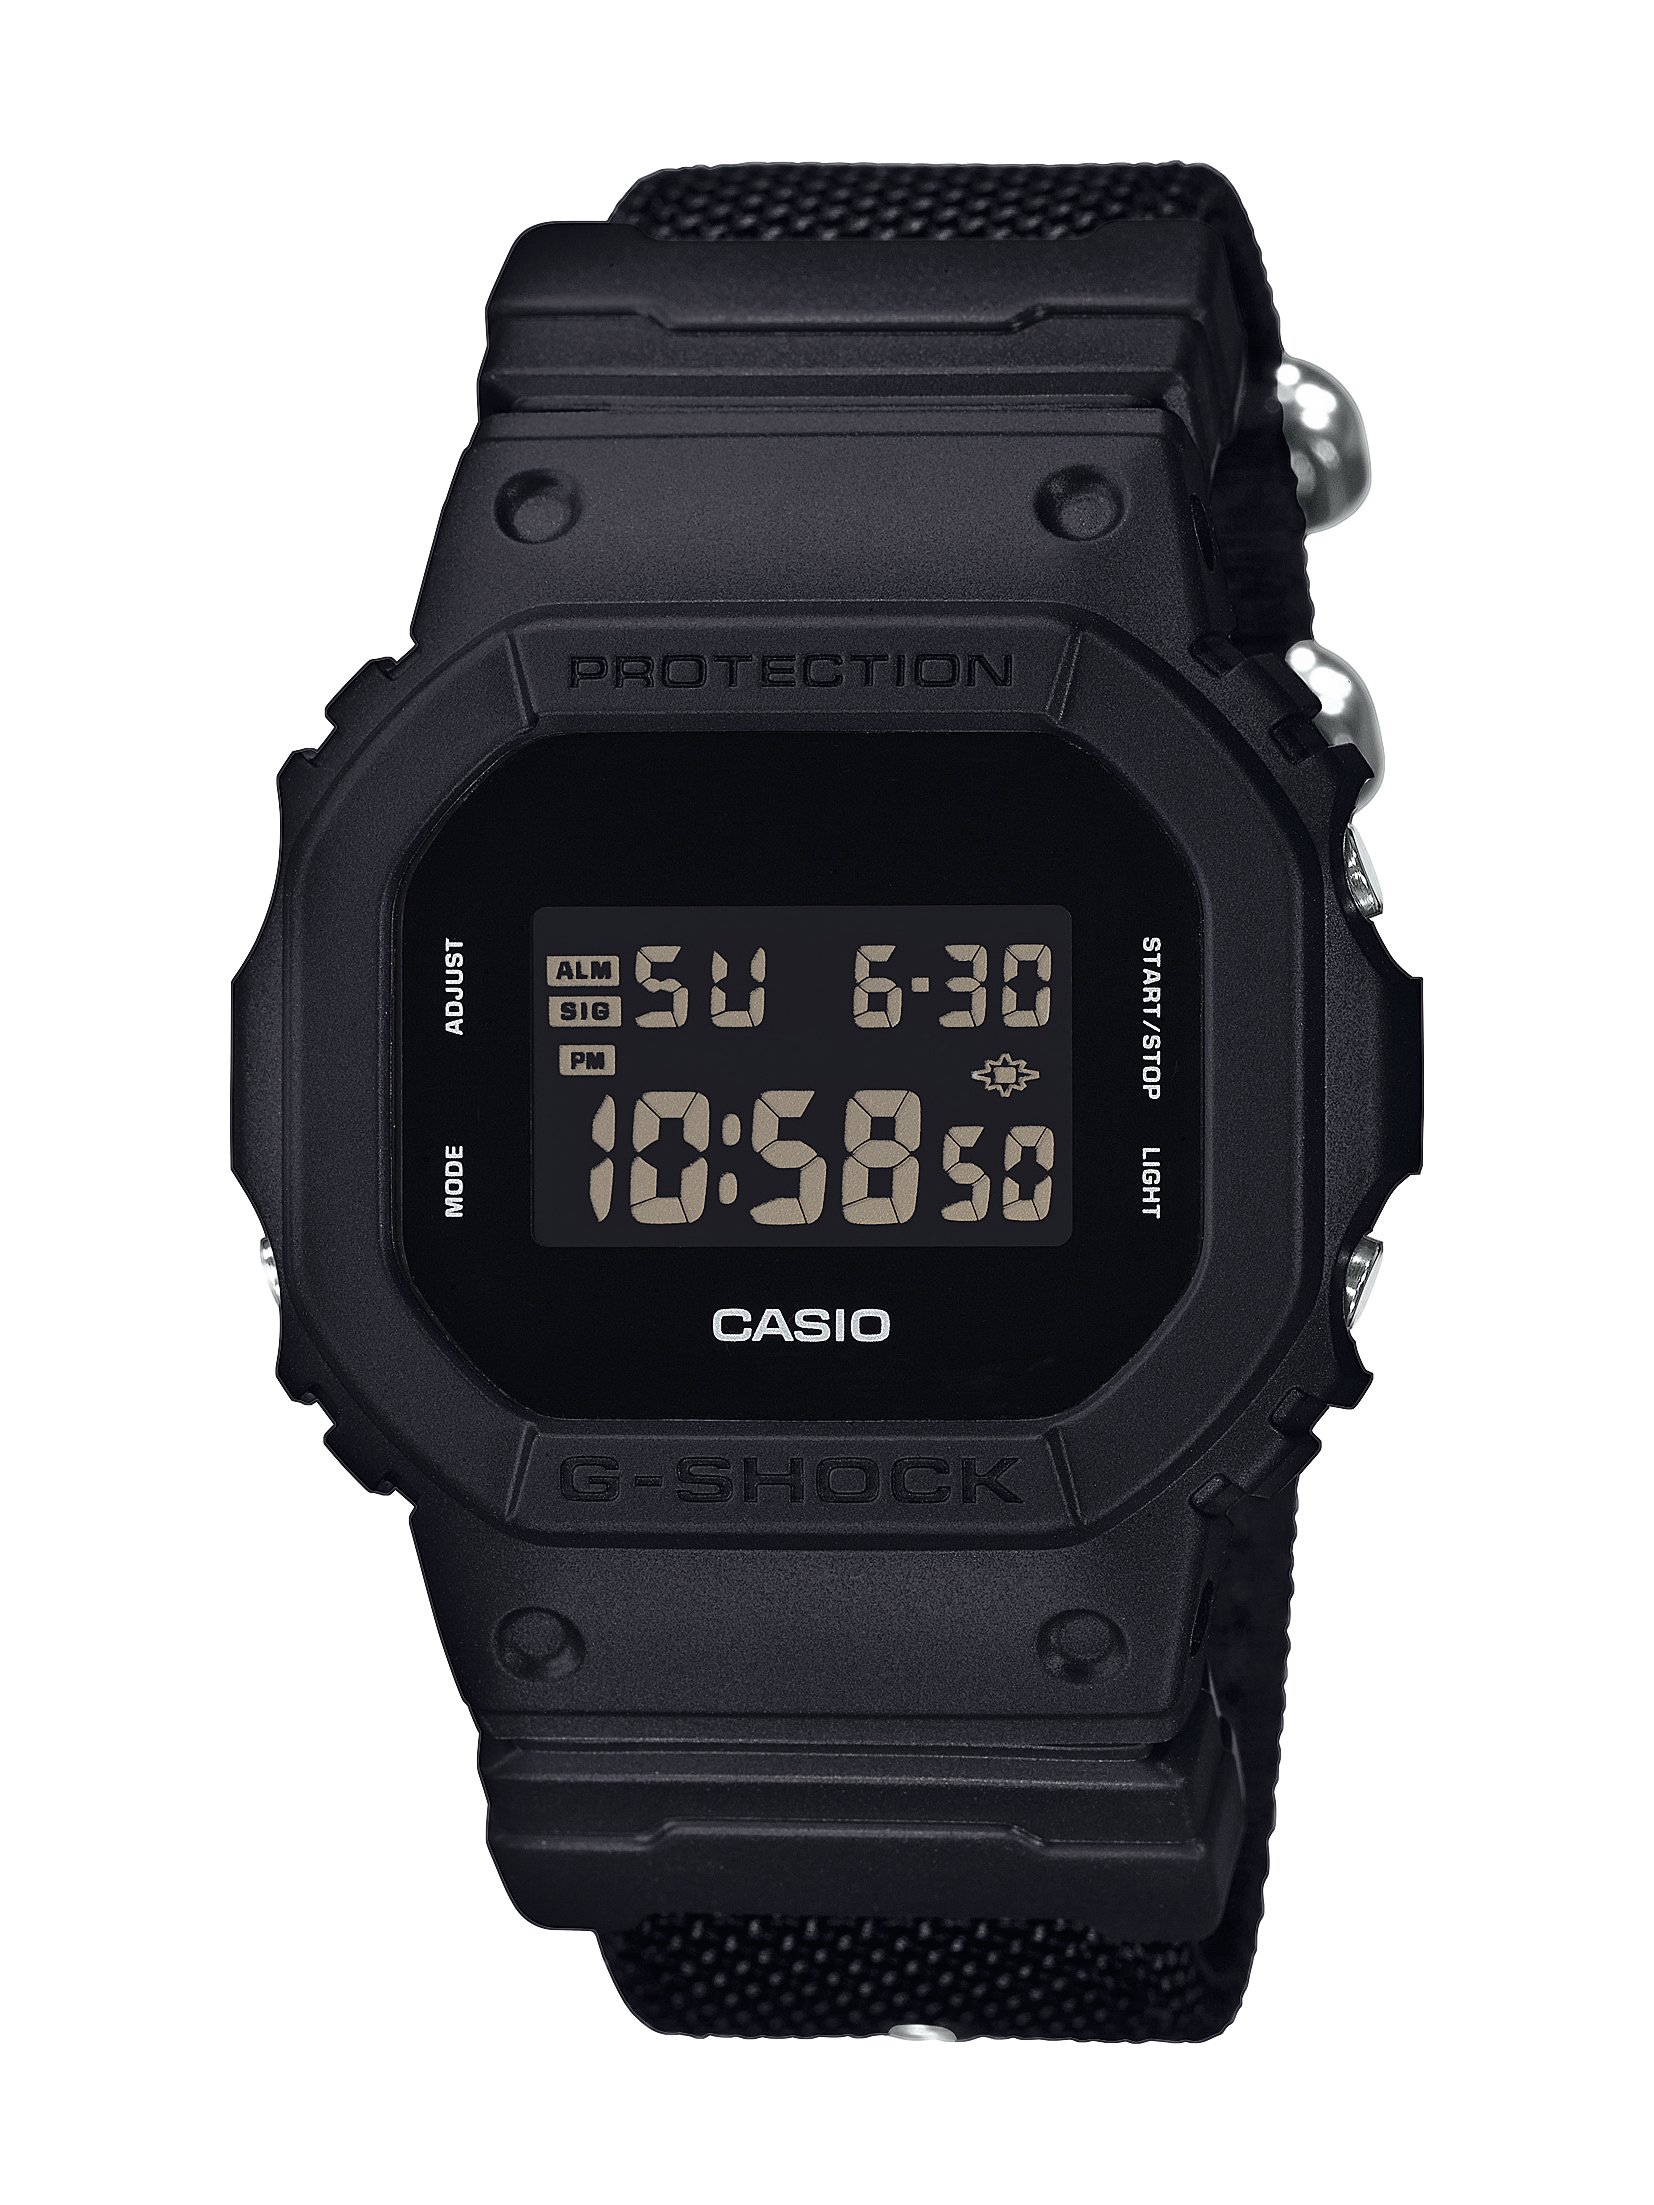 Promocja Zegarek męski Casio G-Shock DW-5600BBN czarny 200M wyprzedaż przecena